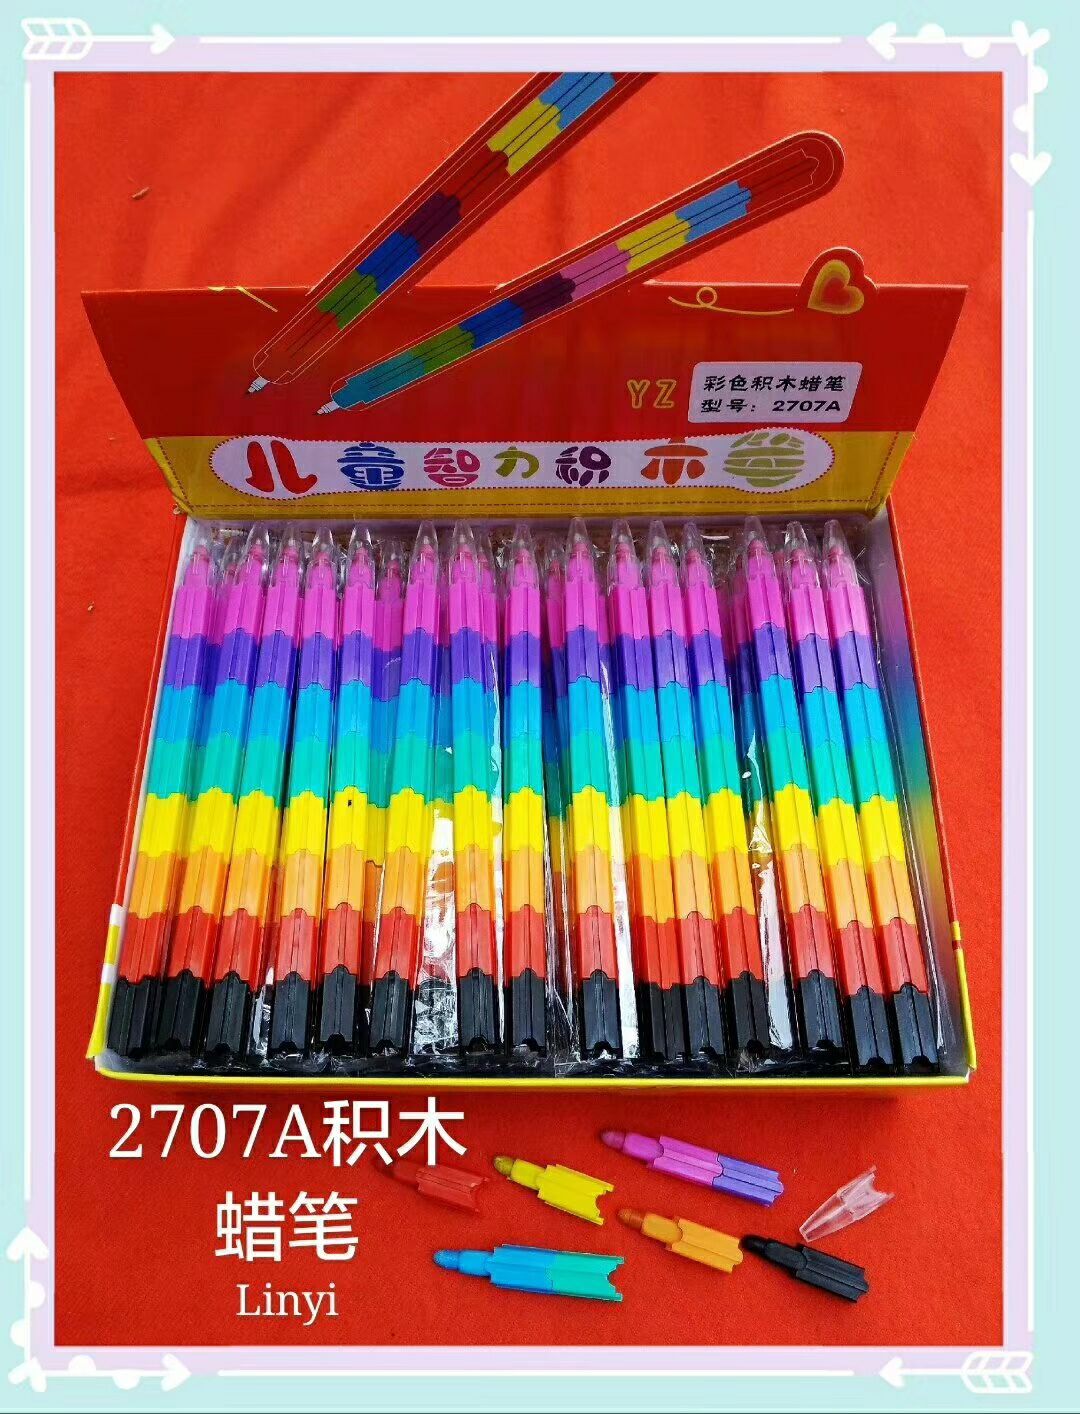 2707积木蜡笔儿童幼儿园绘画填色笔益智八节八色笔创意奖品文具批